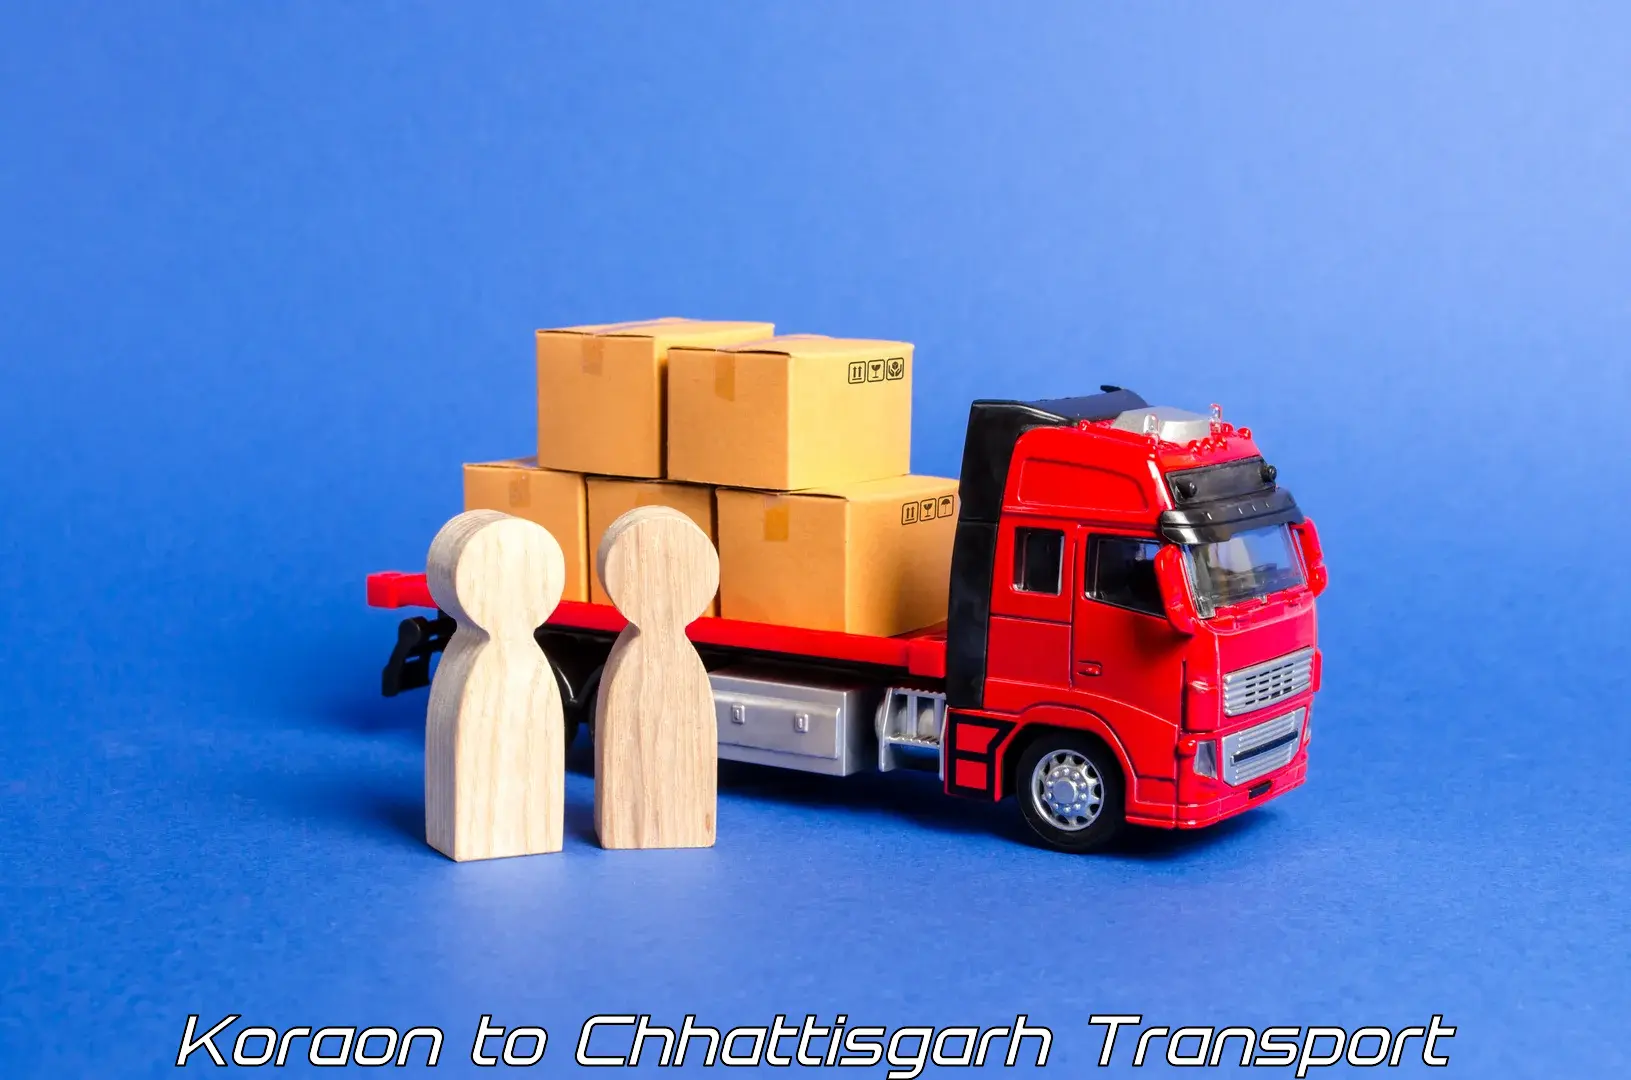 Cargo transport services Koraon to Korea Chhattisgarh